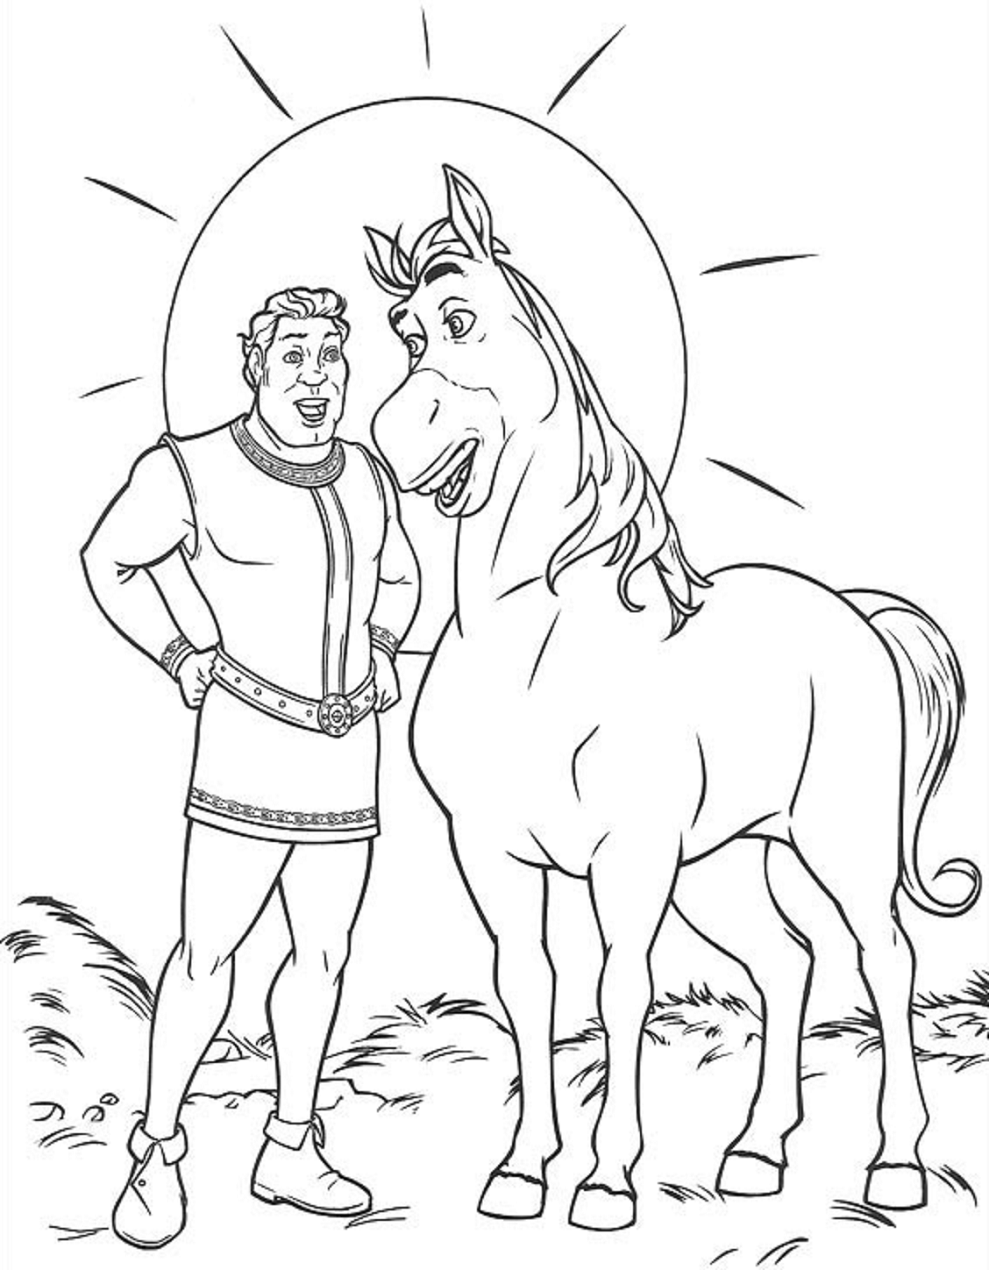 Илья Муромец на коне рисунок карандашом